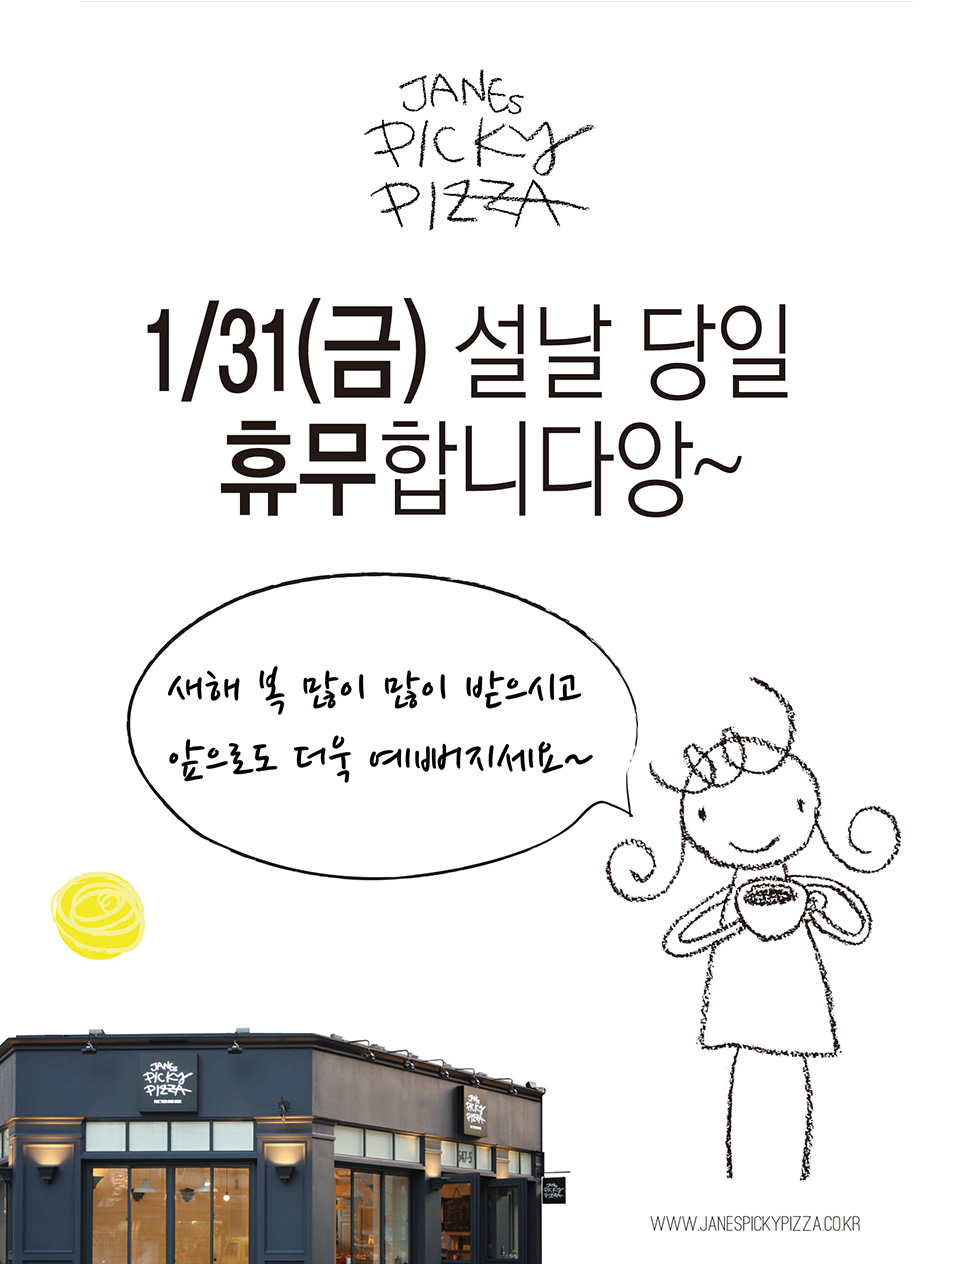 2014년 1월 31일 구정 연휴 휴무 해용~ 새해 복 많이 받으시고 더욱 예뻐지세요. 